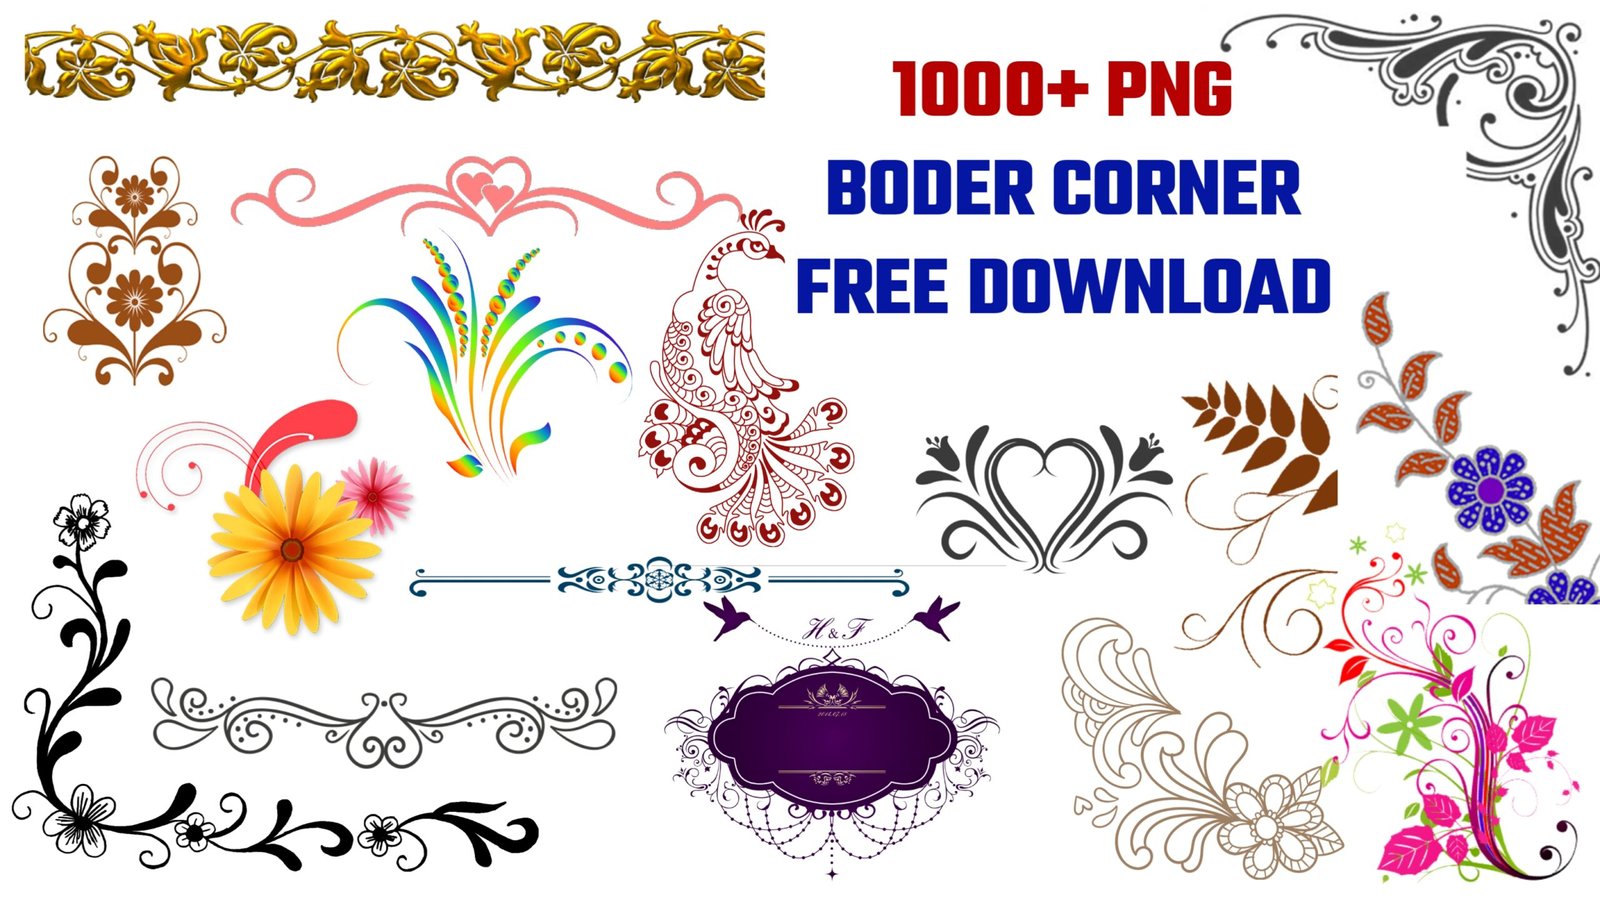 Corner border PNG transparent image | Border corner PNG free download| banner editing PNG images|